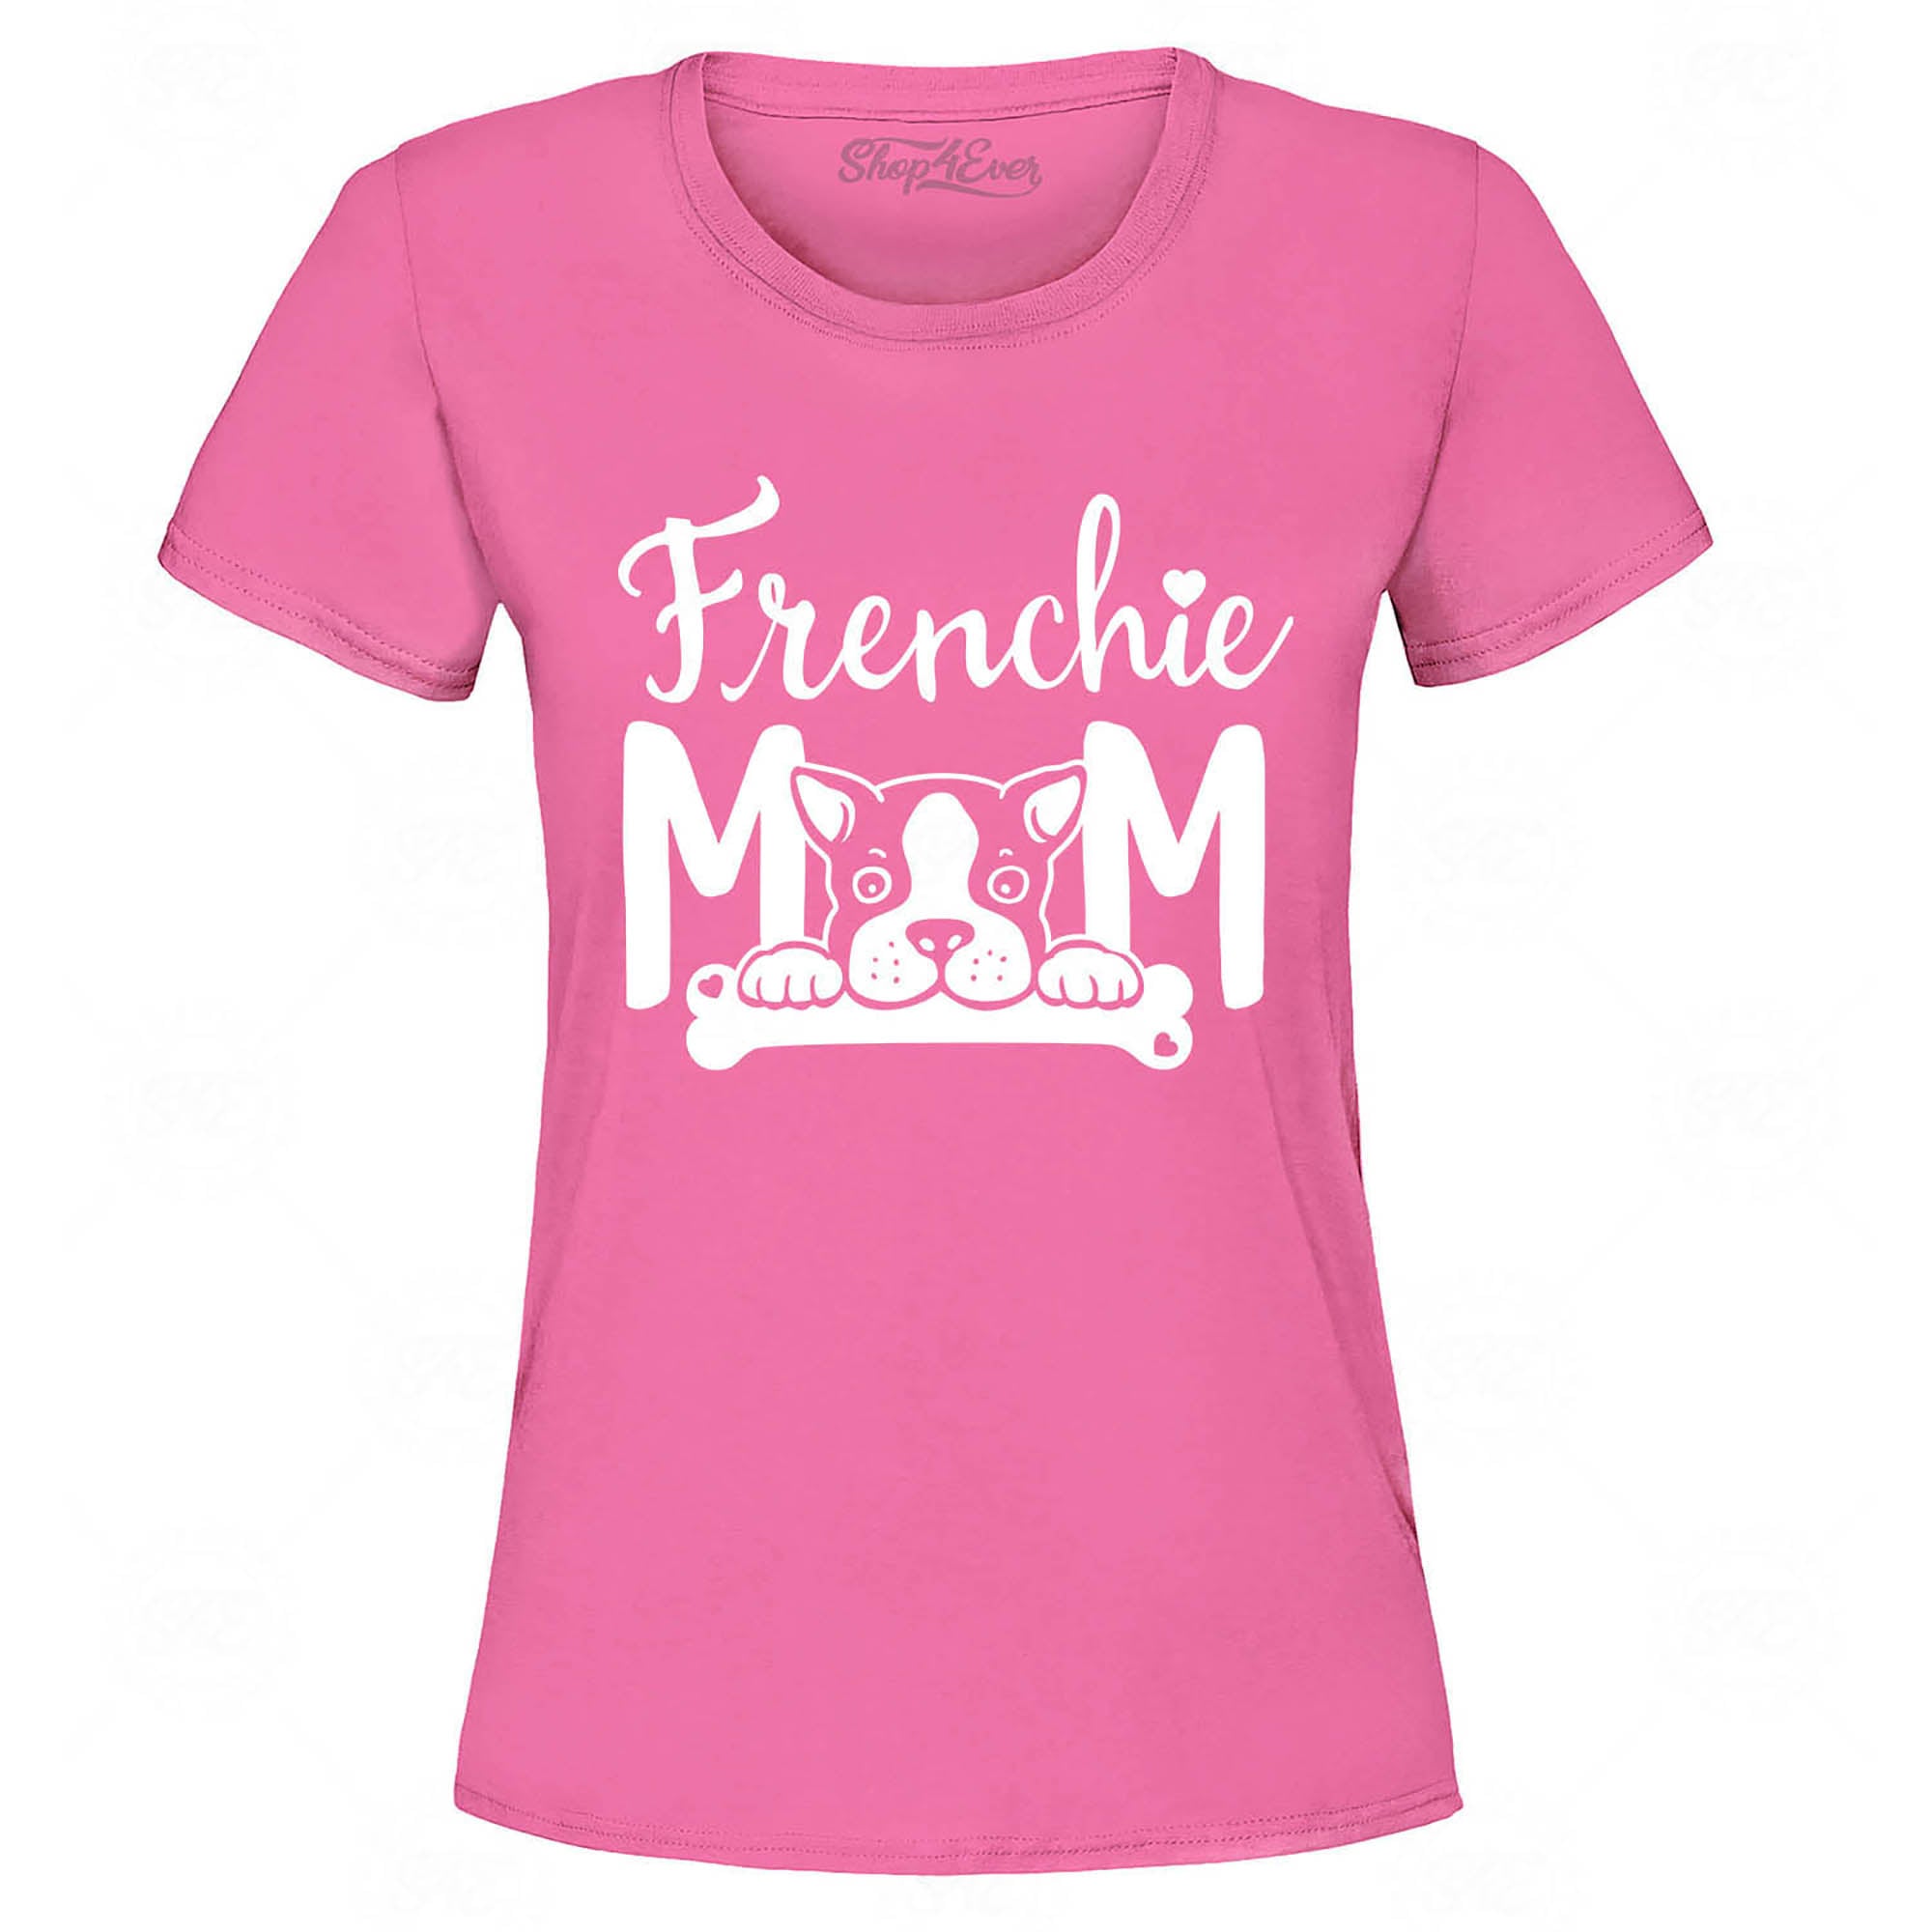 Frenchie Mom Women's T-Shirt